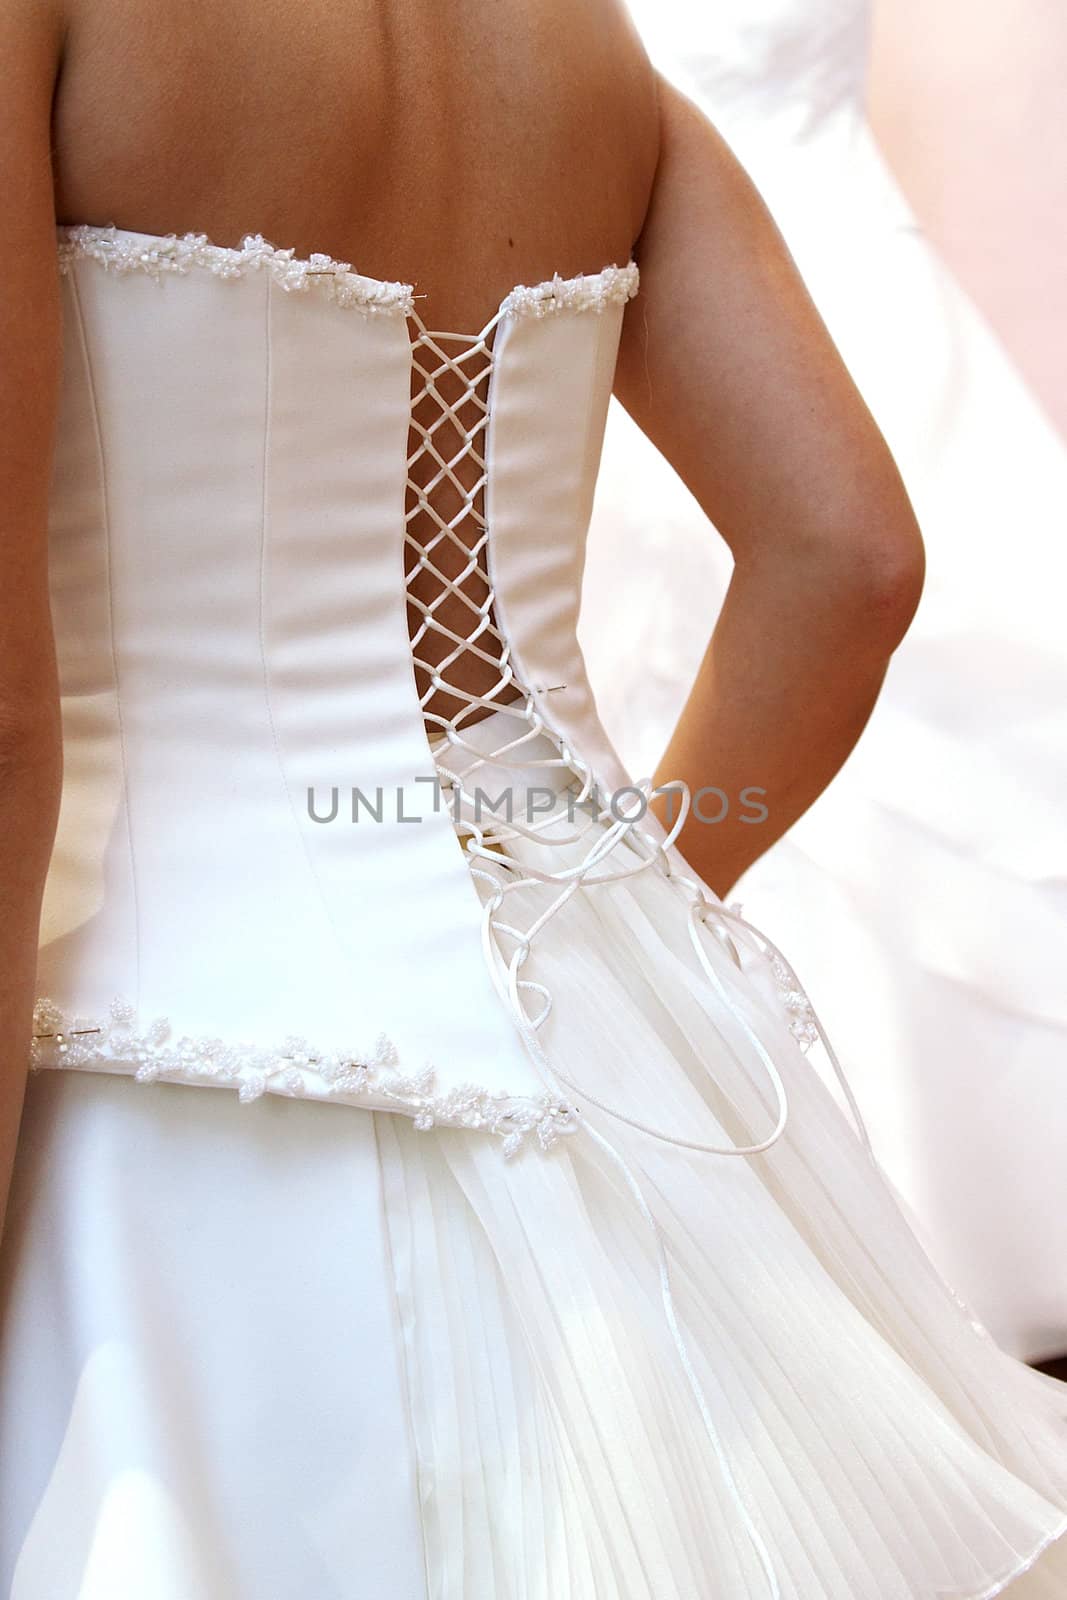 woman puts on beautiful white wedding dress